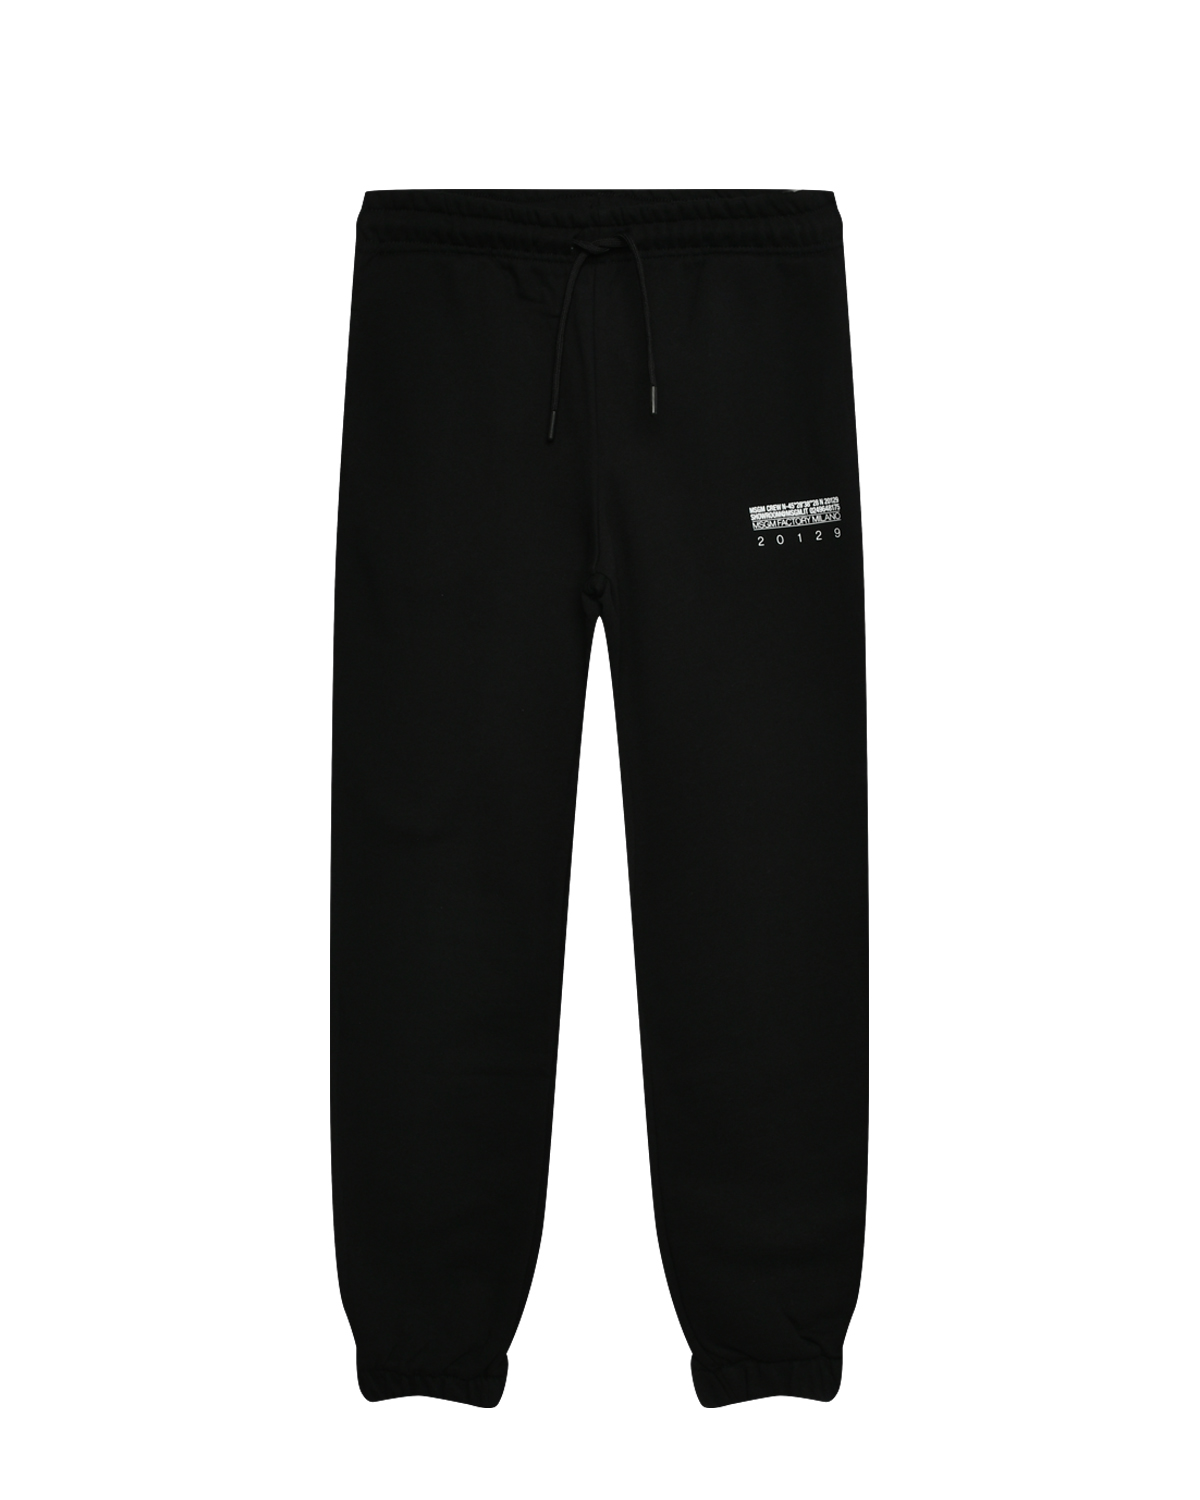 Спортивные брюки с поясом на резинке MSGM, размер 152, цвет черный - фото 1